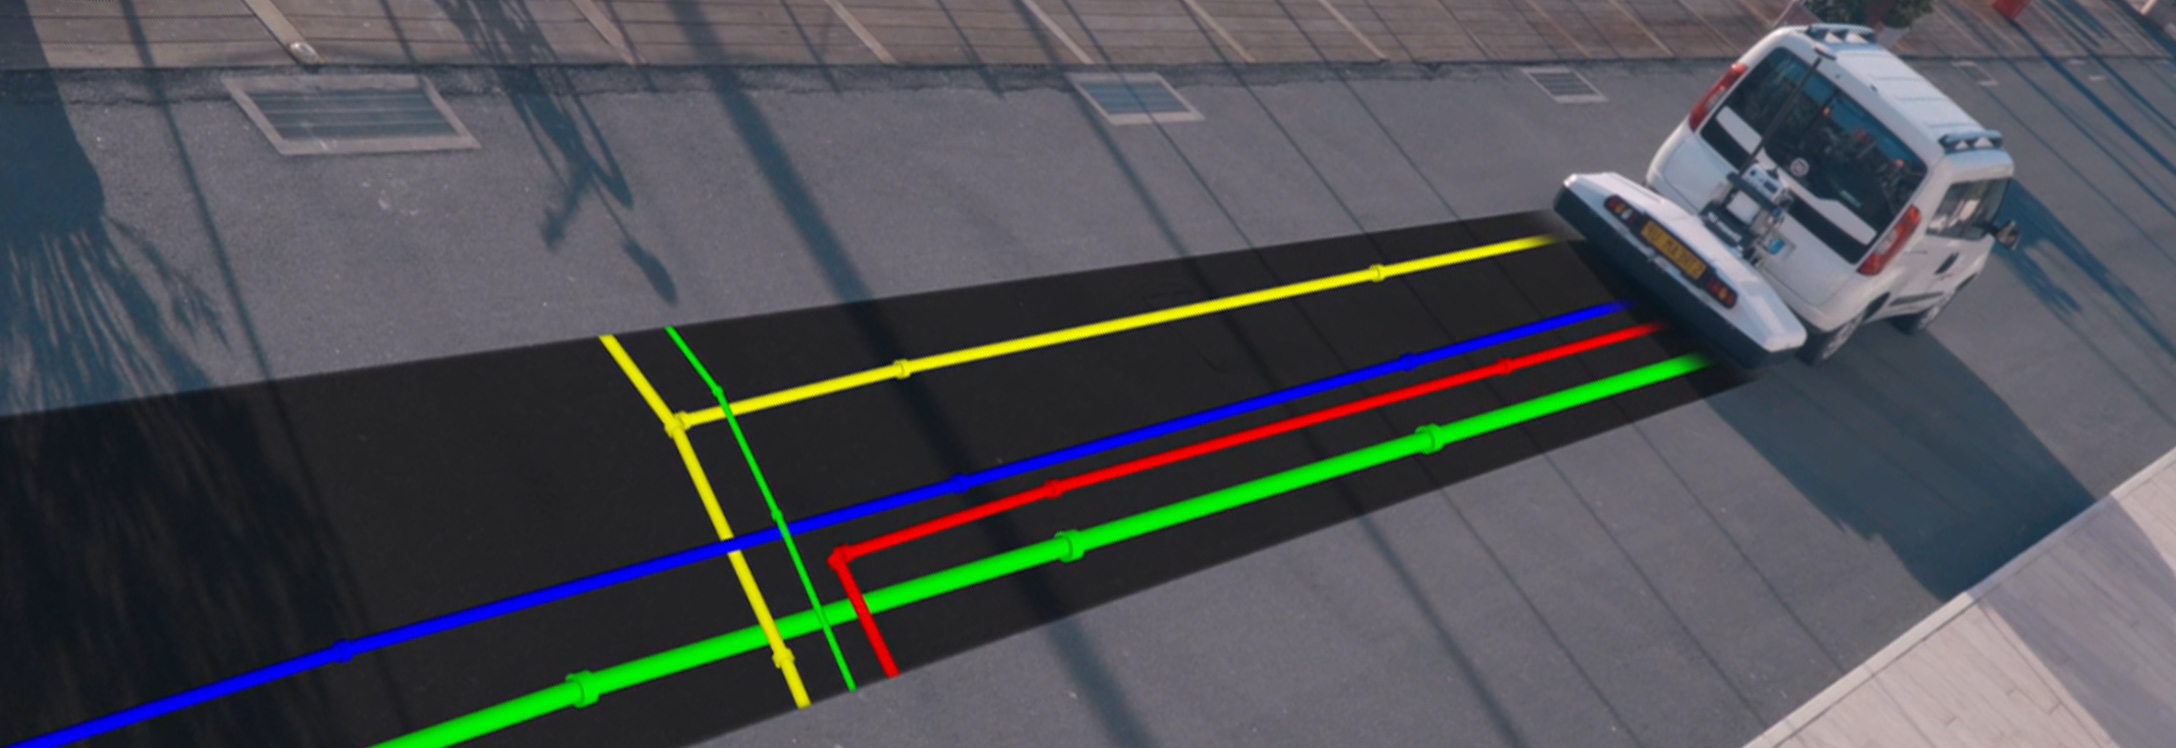 Una tuberías de color representadas gráficamente expuestas ante una furgoneta que pasa por delante utilizando un radar de penetración subterránea